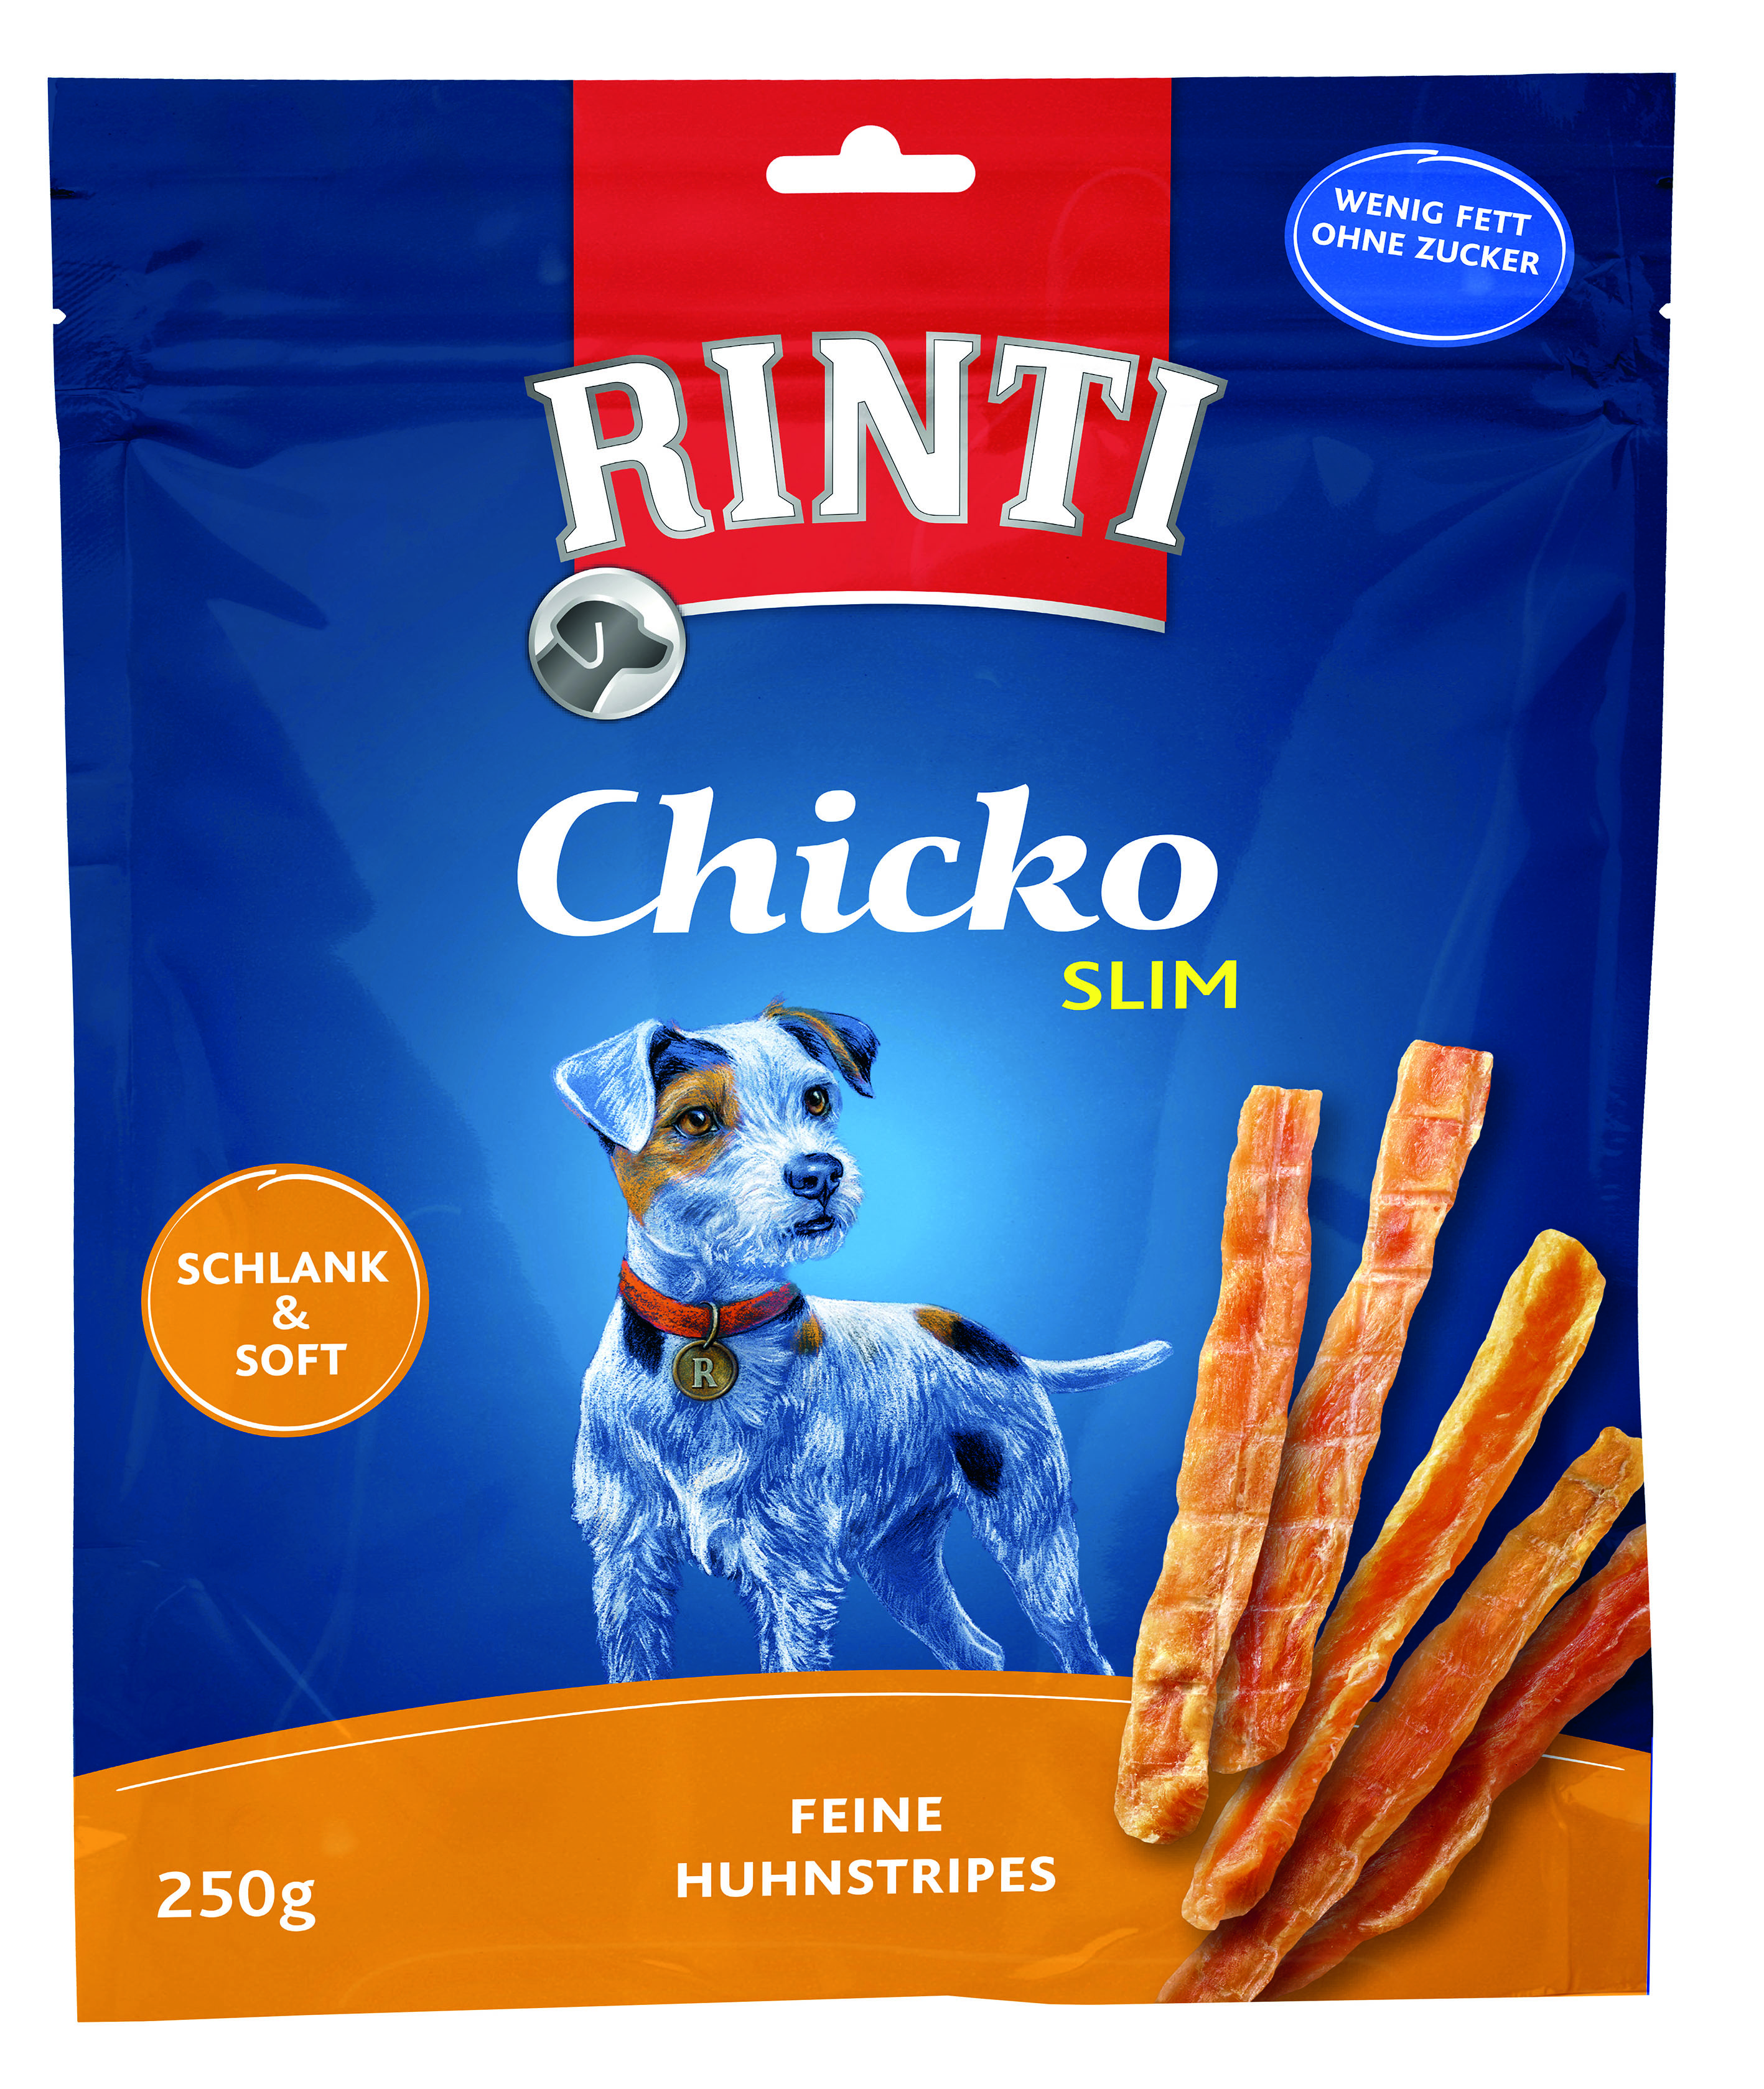 Rinti Chicko Slim Huhn Vorratspack 250g